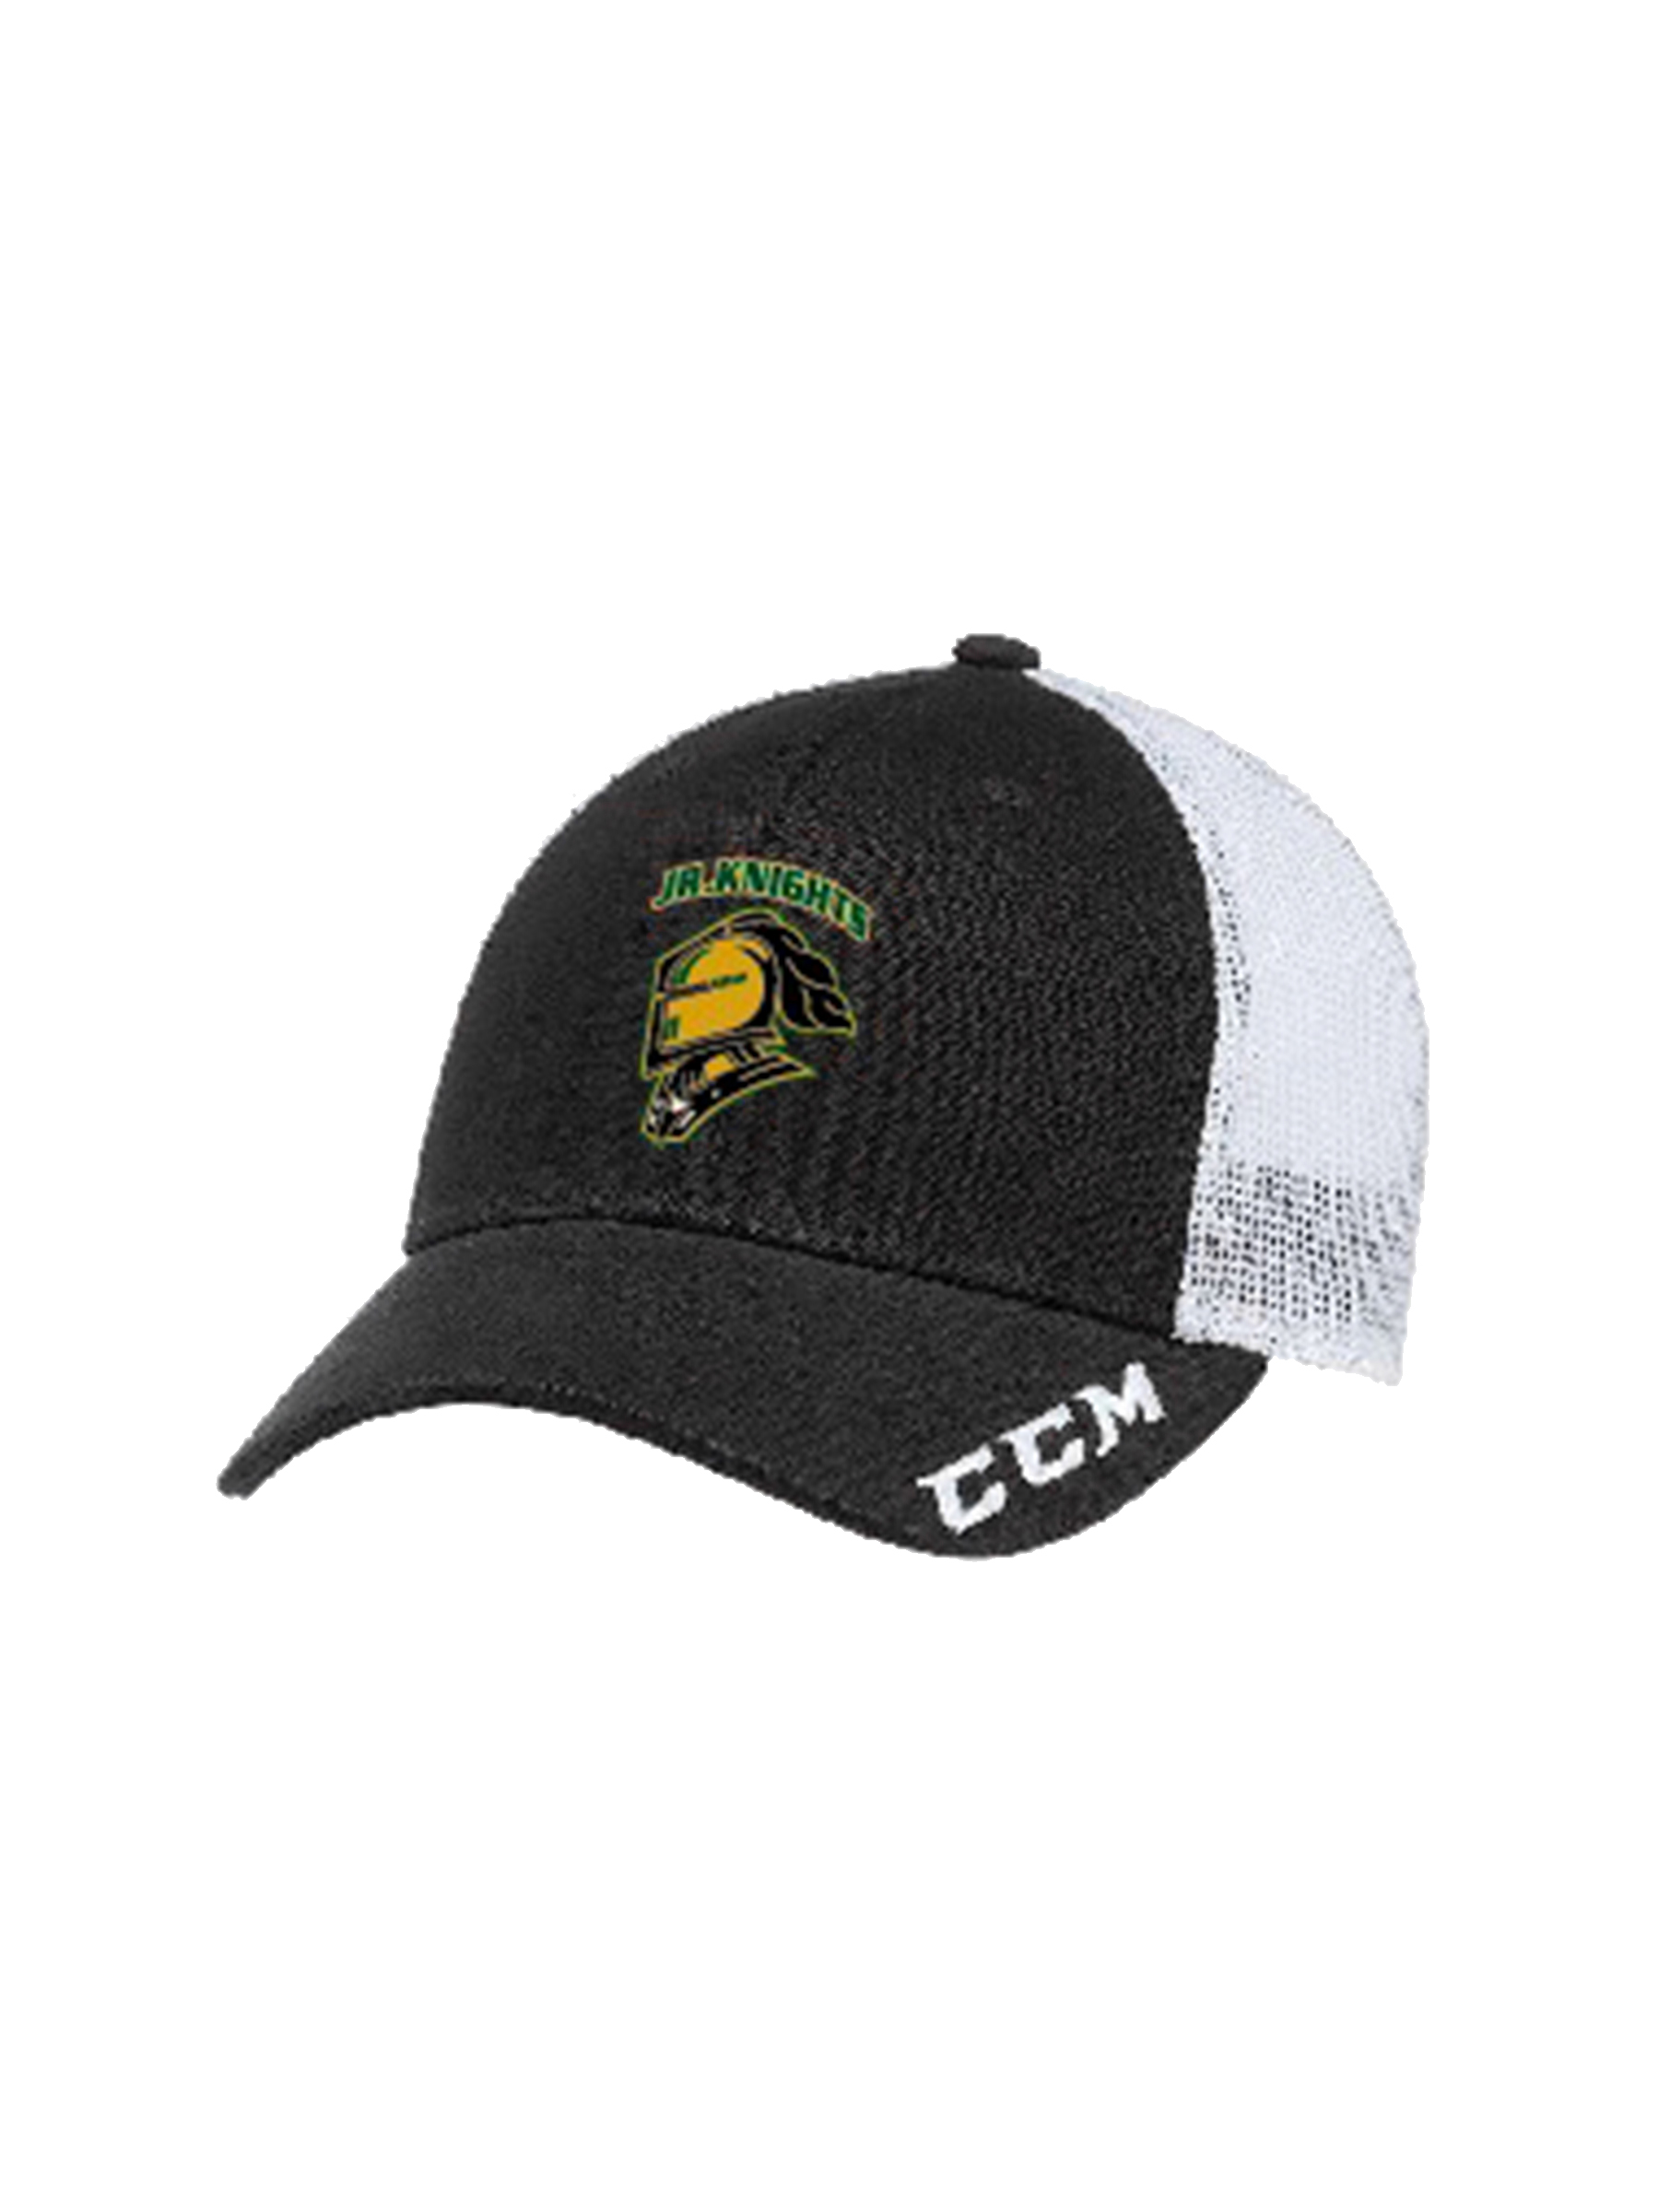 LJK CCM Trucker Style Hat — Pete's Sports